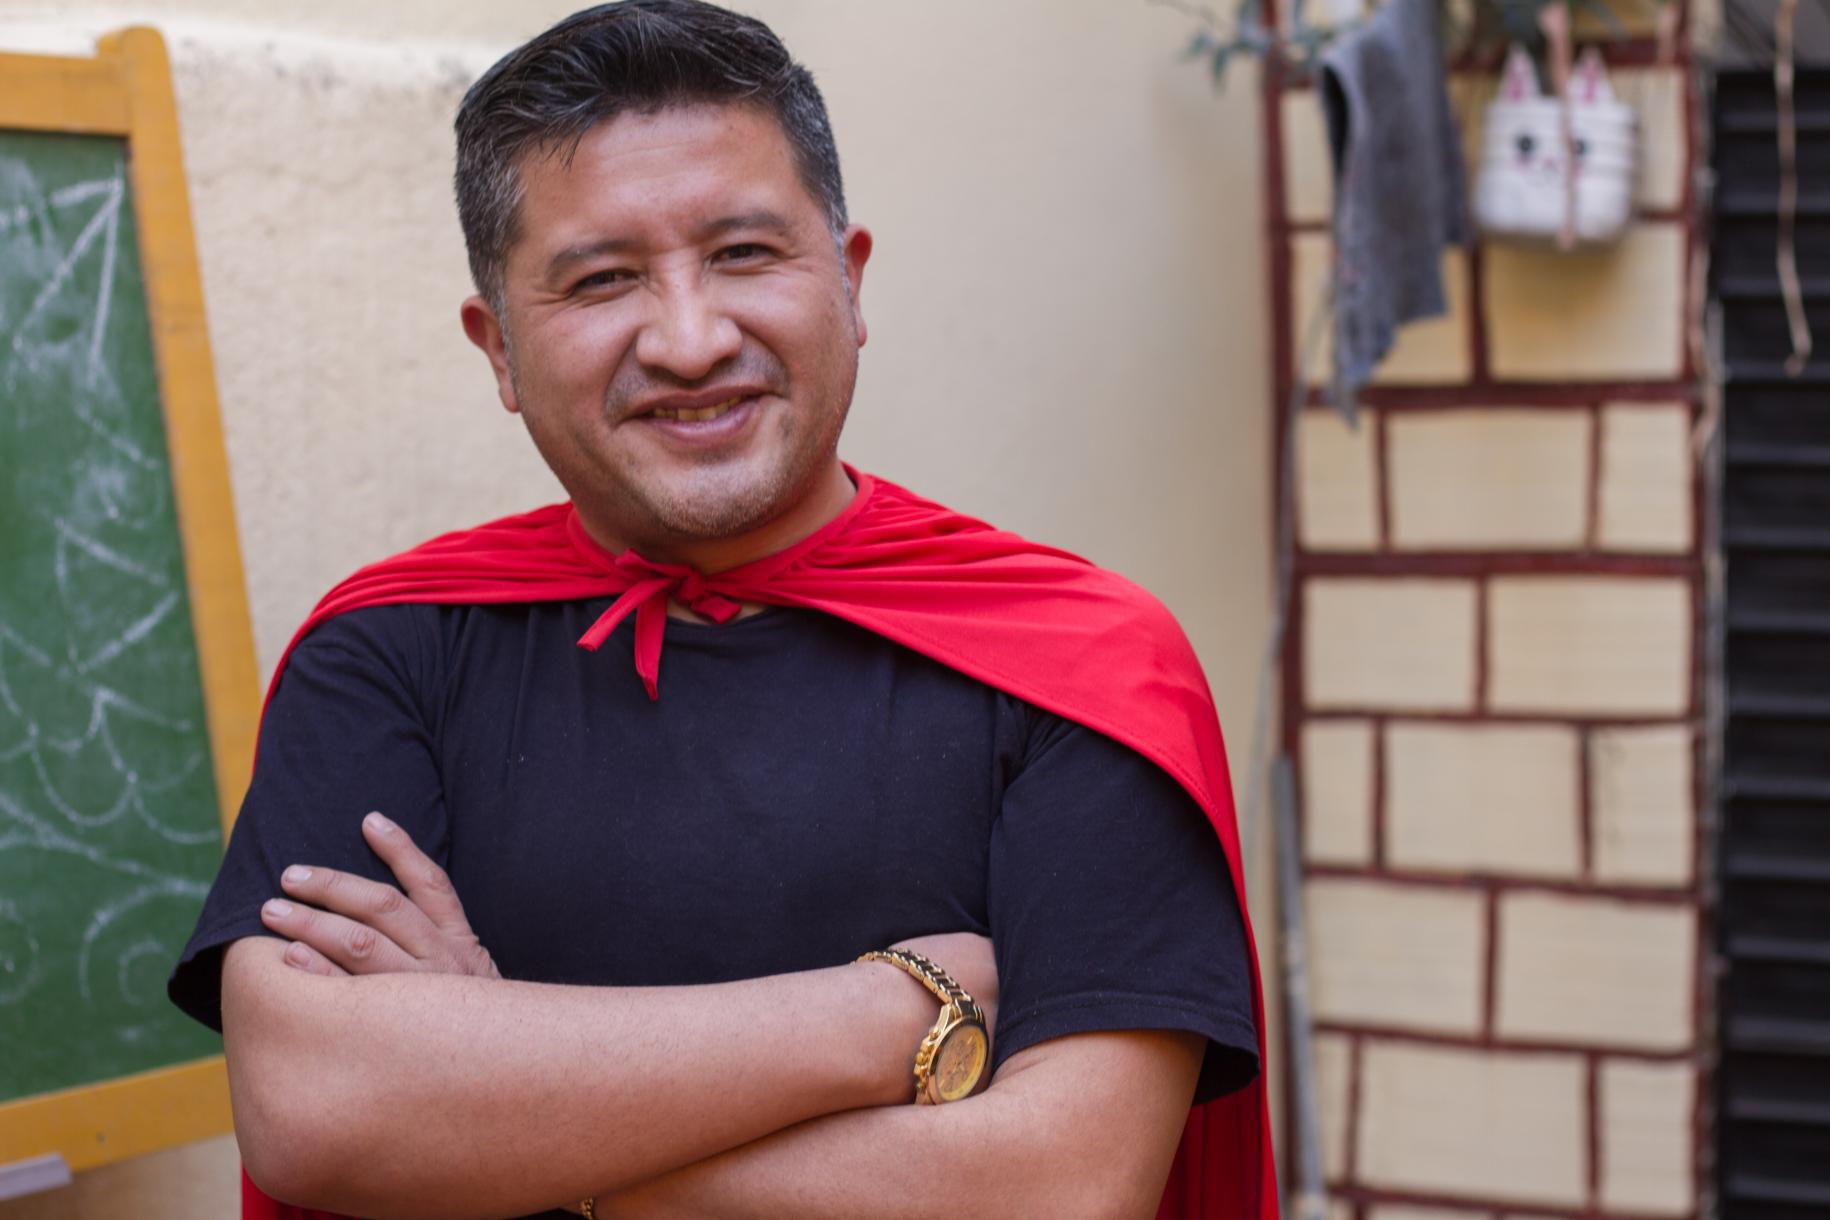 Un hombre sonriente frente a una pizarra, con anotaciones hechas con tiza blanca, y lleva puesta una capa roja de superhéroe.